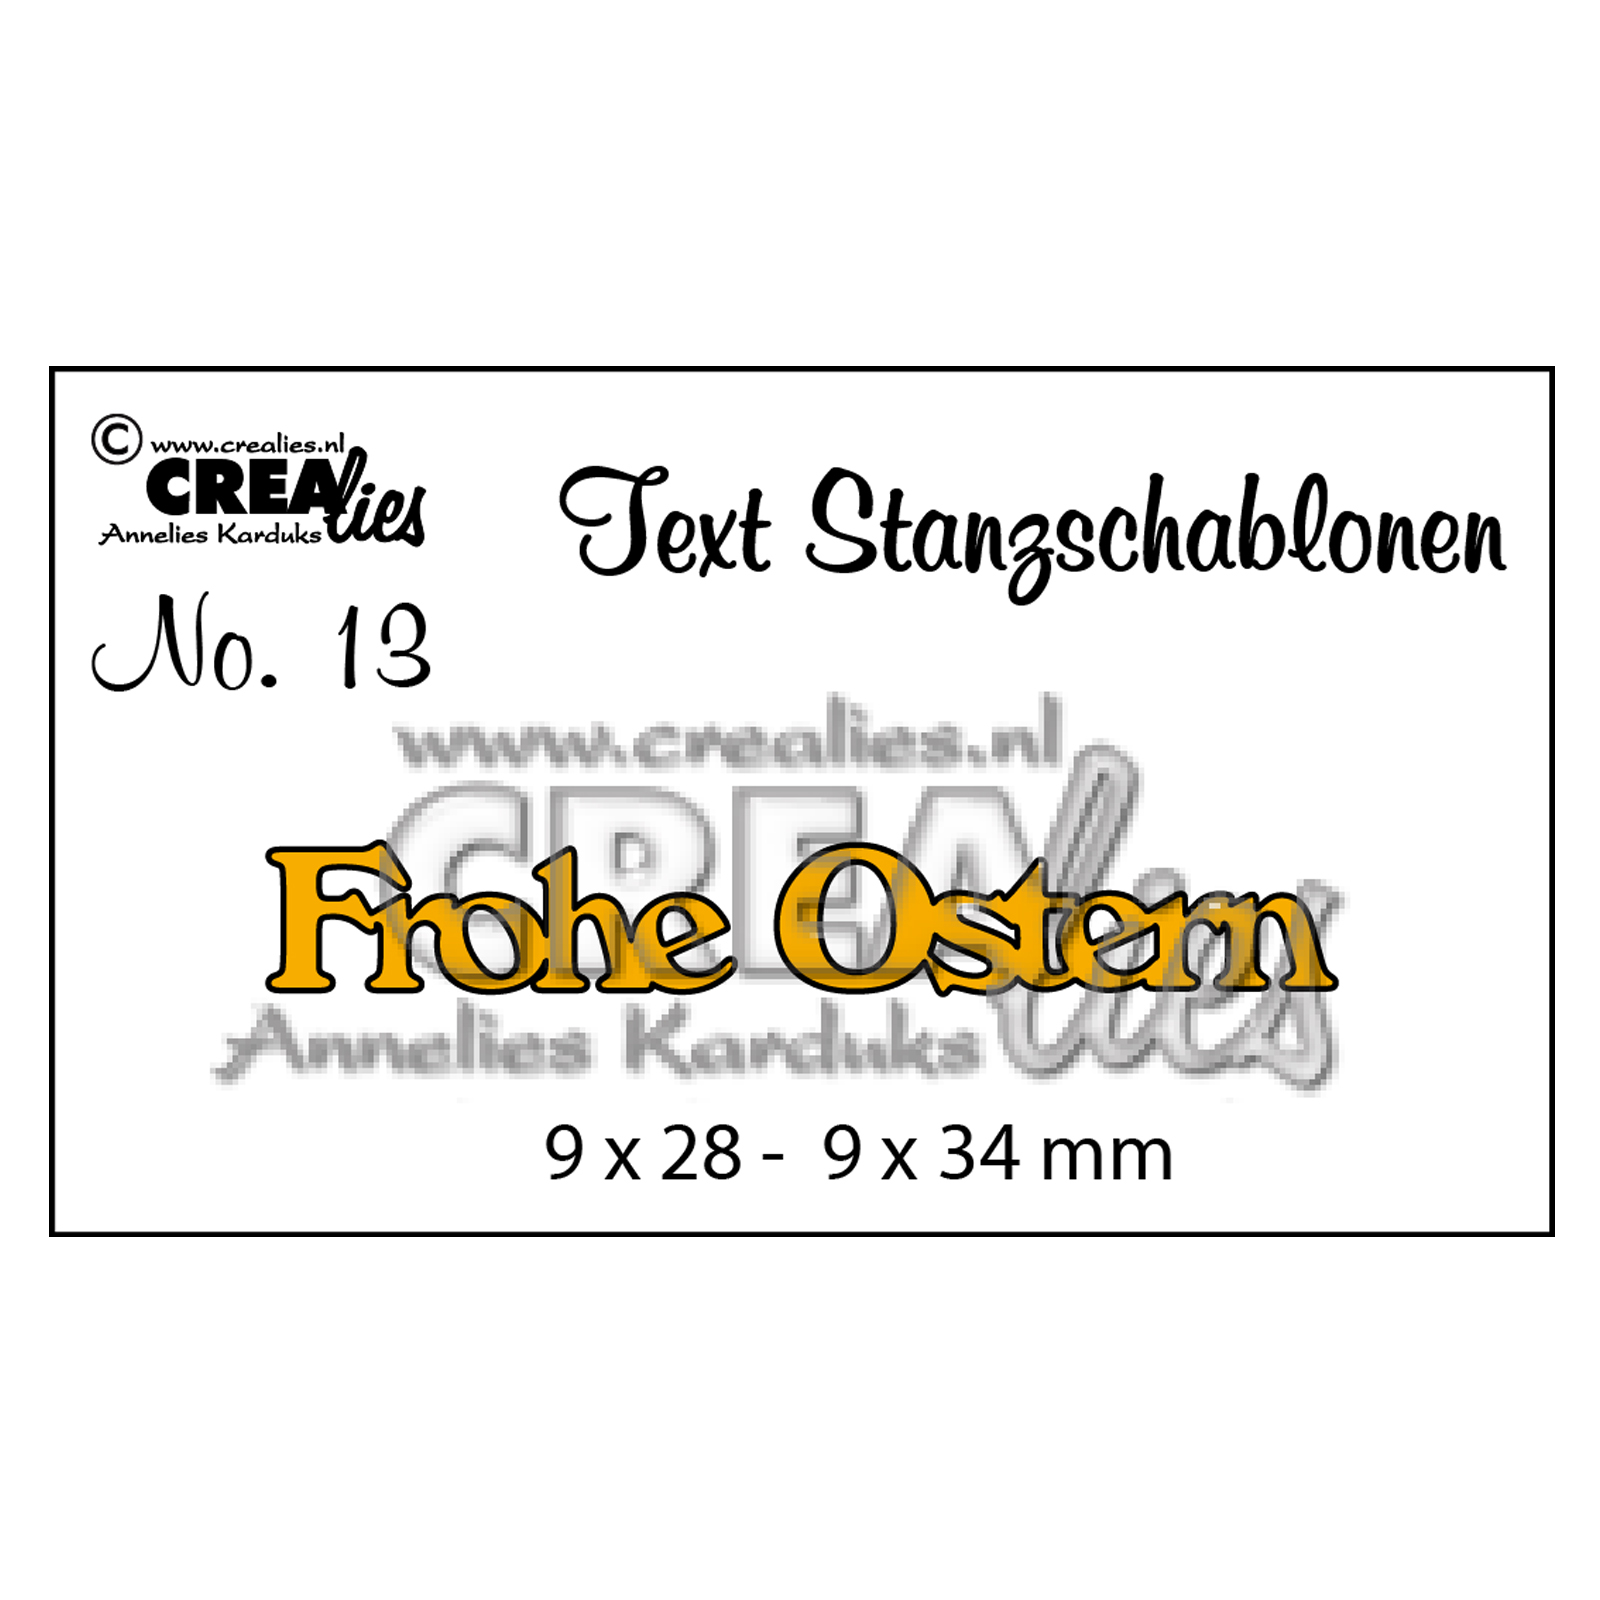 Crealies • Plantilla de corte con texto en alemán no.13 "Frohe Ostern"